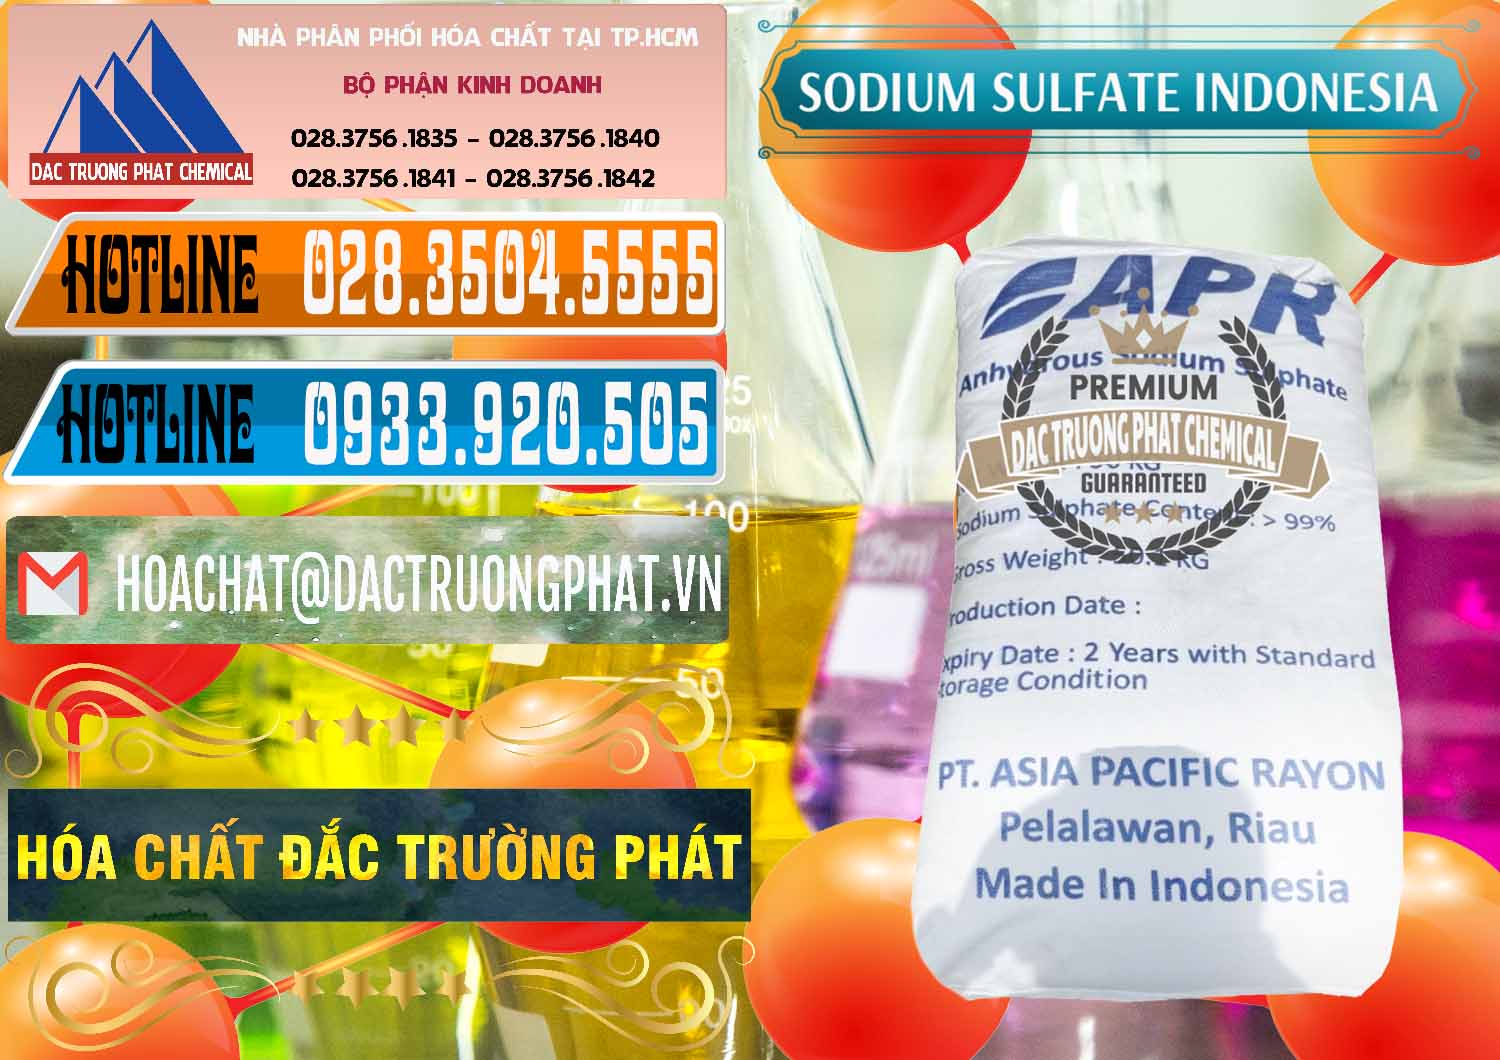 Cty chuyên bán - phân phối Sodium Sulphate - Muối Sunfat Na2SO4 APR Indonesia - 0460 - Công ty phân phối ( bán ) hóa chất tại TP.HCM - stmp.net